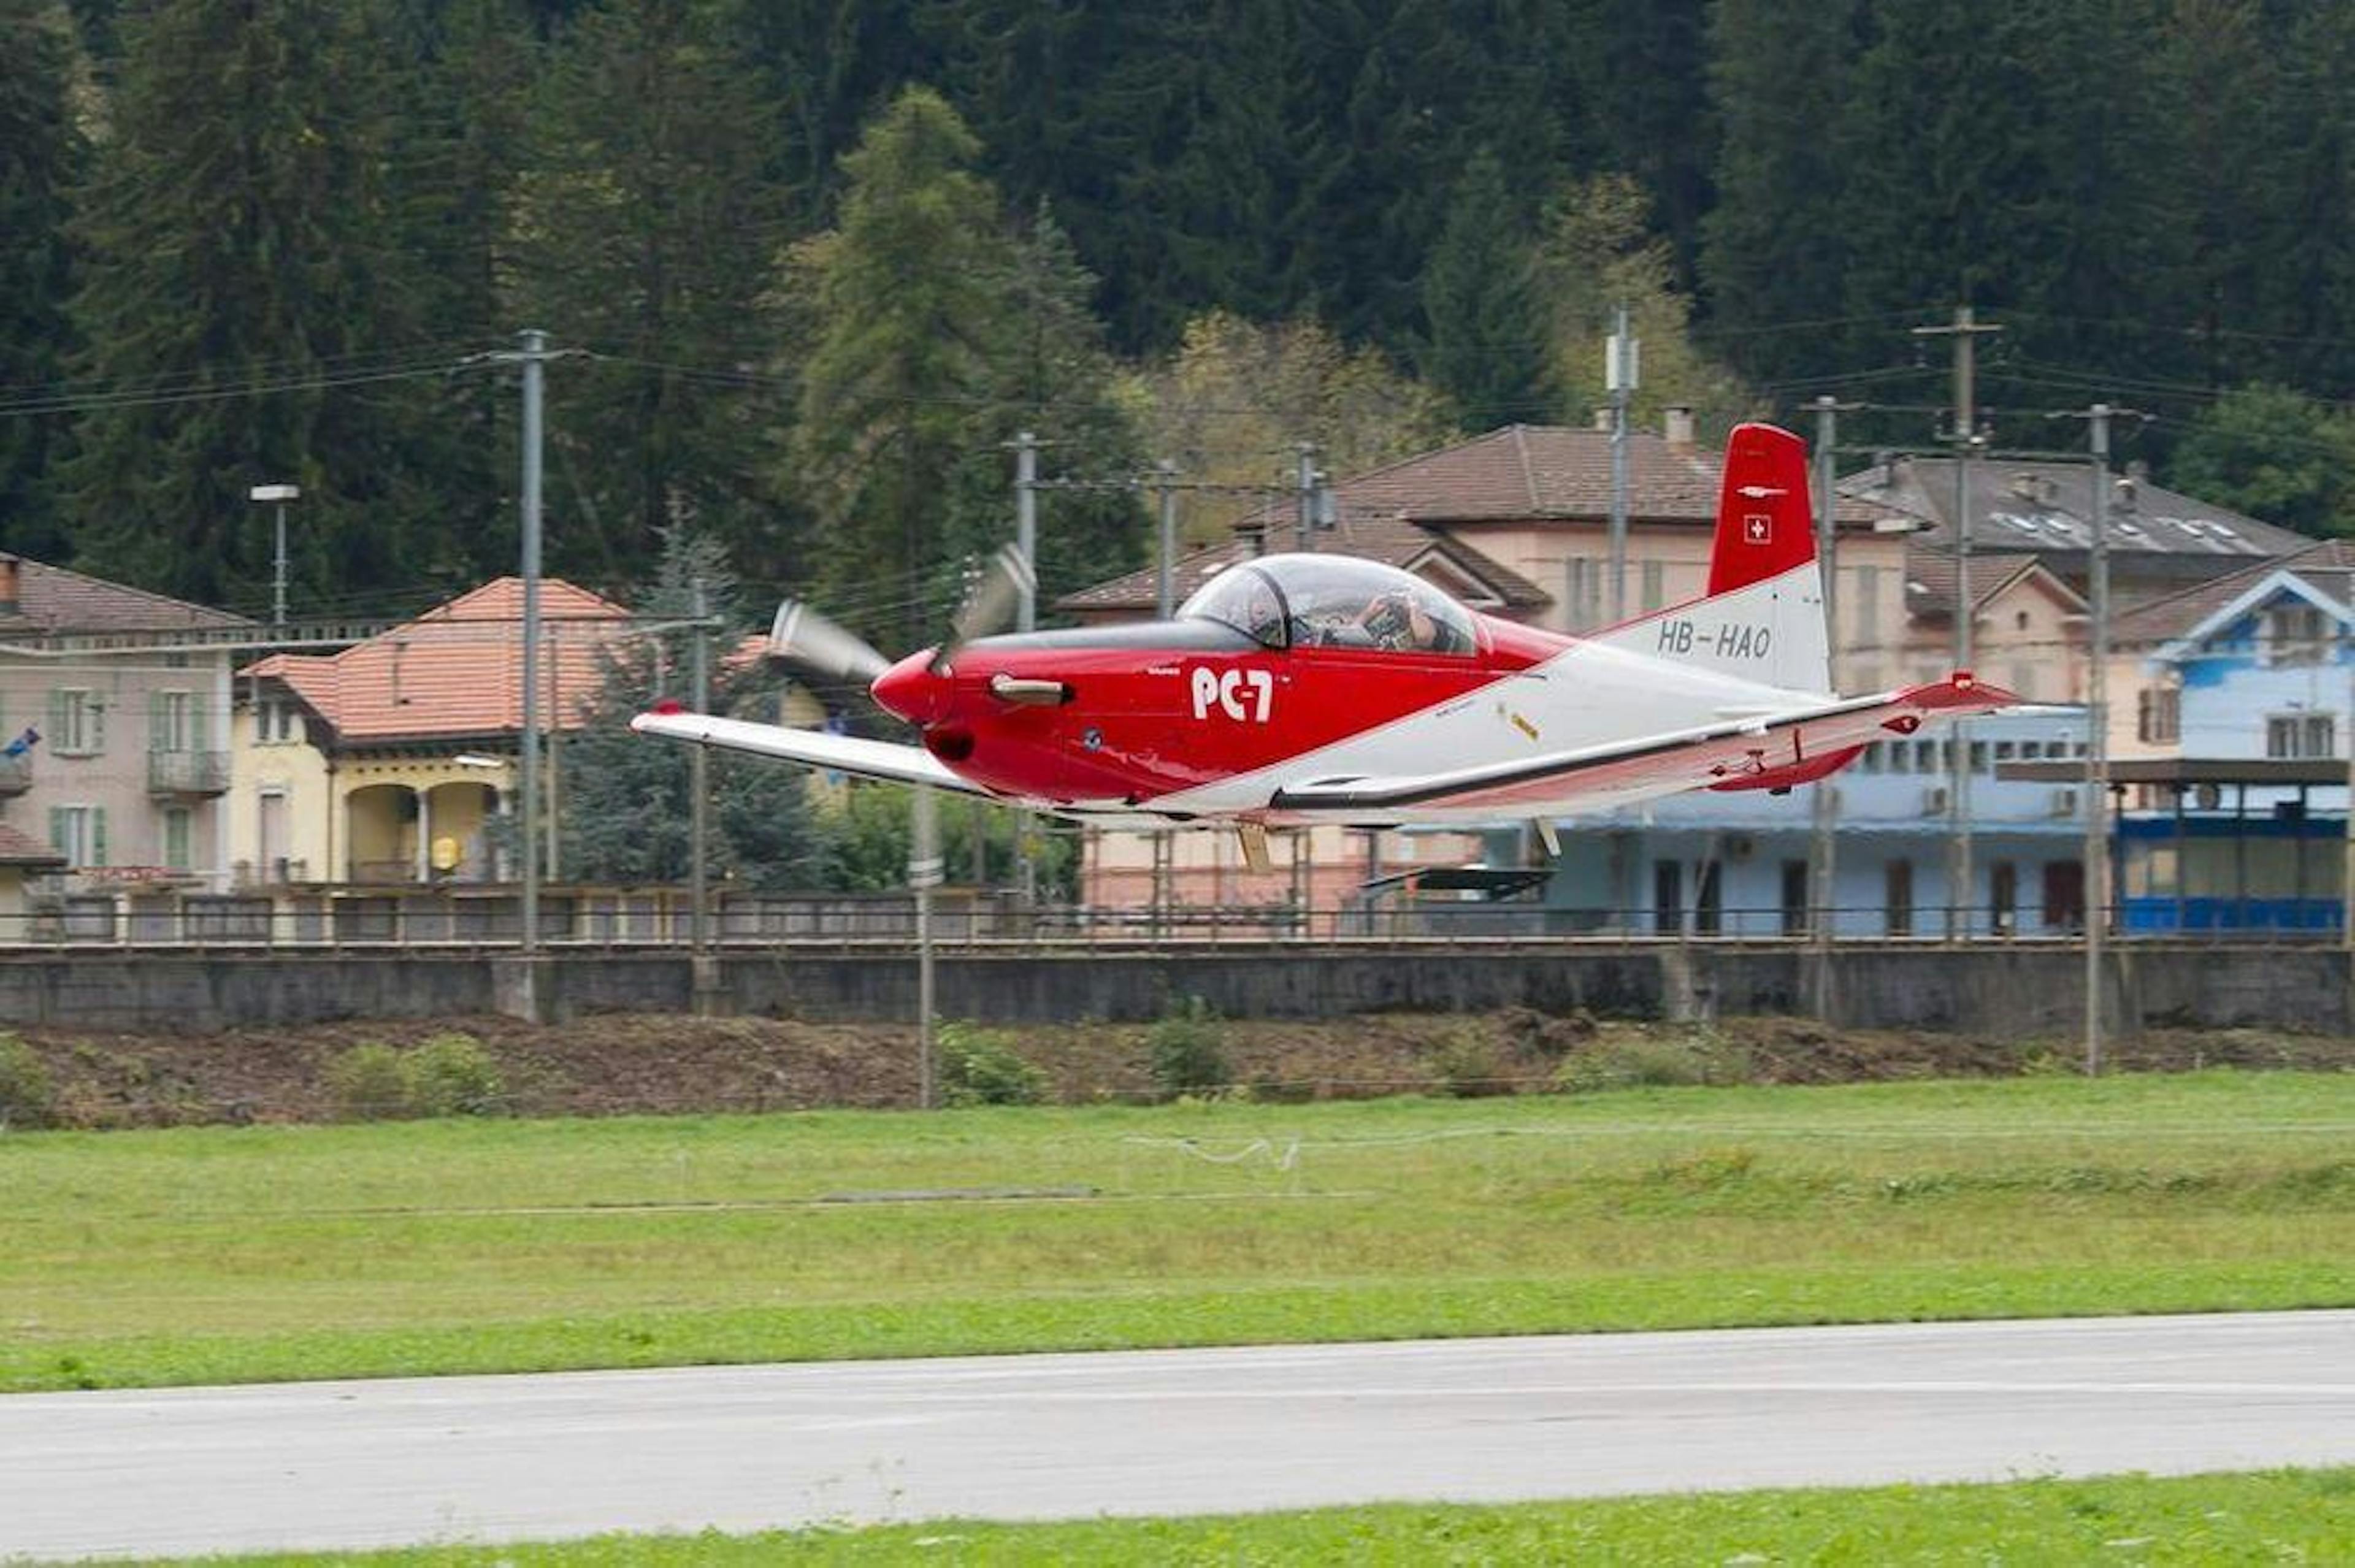 Pilatus PC7 take-off